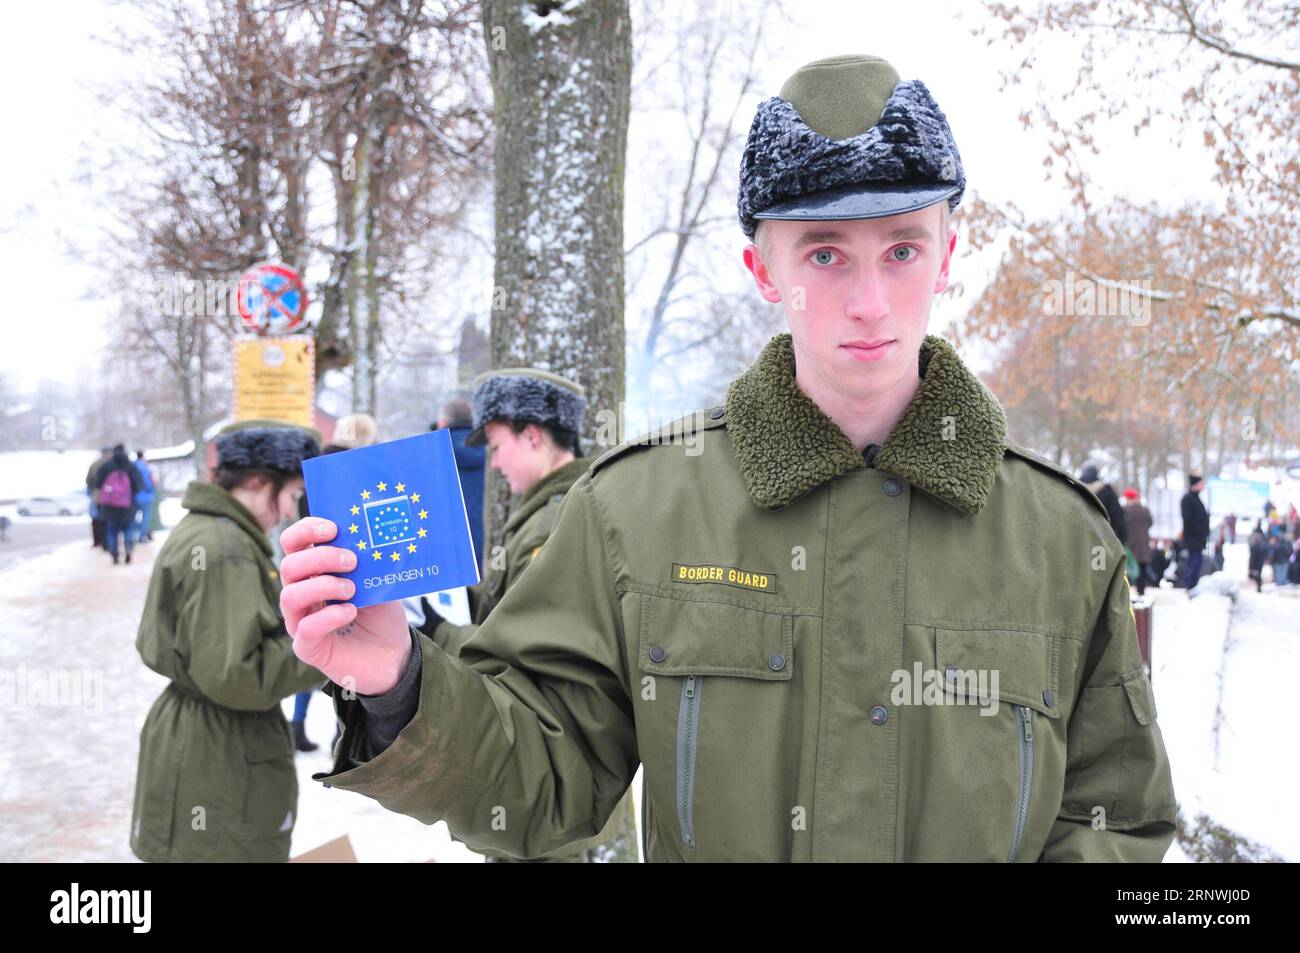 (171221) -- VALKA/VALGA, 21 dicembre 2017 -- una guardia di frontiera estone mostra il decimo anniversario del cioccolato dell'area Schengen in un ex valico di frontiera tra Valka in Lettonia e Valga in Estonia, il 21 dicembre 2017. I presidenti dei vicini baltici Lettonia ed Estonia si sono incontrati giovedì per celebrare il primo decennio dei loro paesi nell'area Schengen. ) LETTONIA-ESTONIA-FRONTIERA-SPAZIO SCHENGEN-DECIMO ANNIVERSARIO JANIS PUBLICATIONXNOTXINXCHN Foto Stock